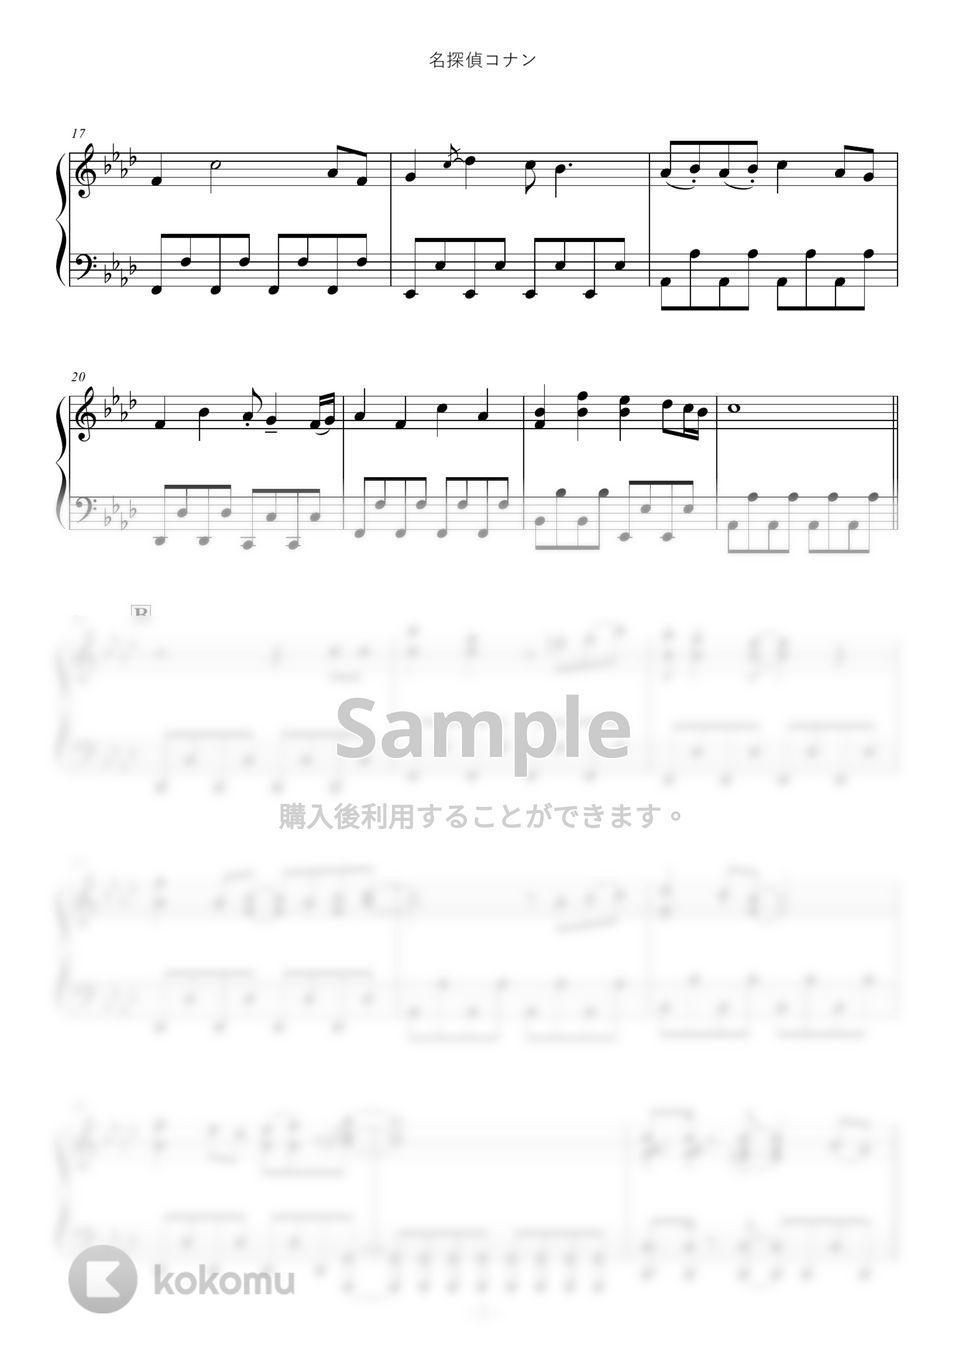 名探偵コナン - 「名探偵コナン」メイン・テーマ by ABIA Music